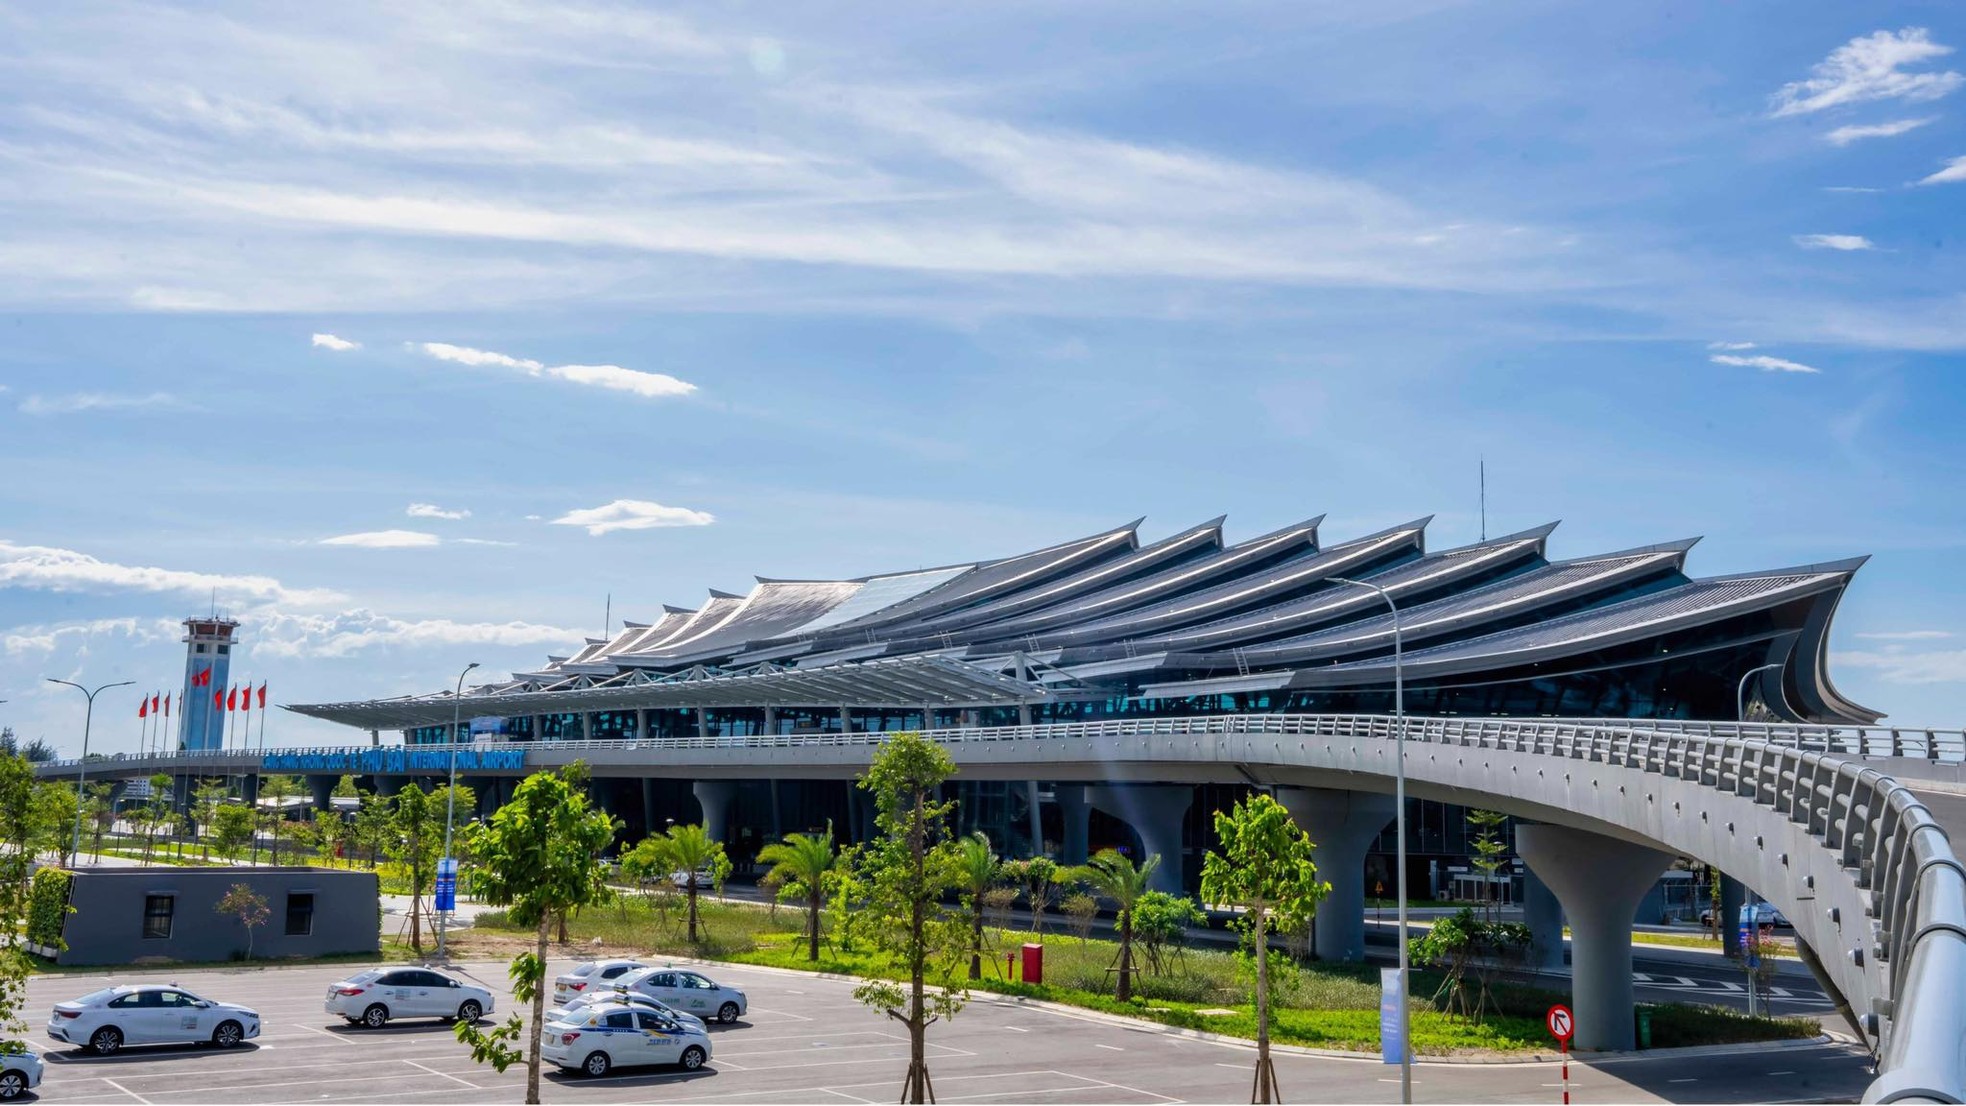 Ấn tượng hình ảnh kiến trúc sân bay 'độc nhất vô nhị' ở Việt Nam - Ảnh 3.